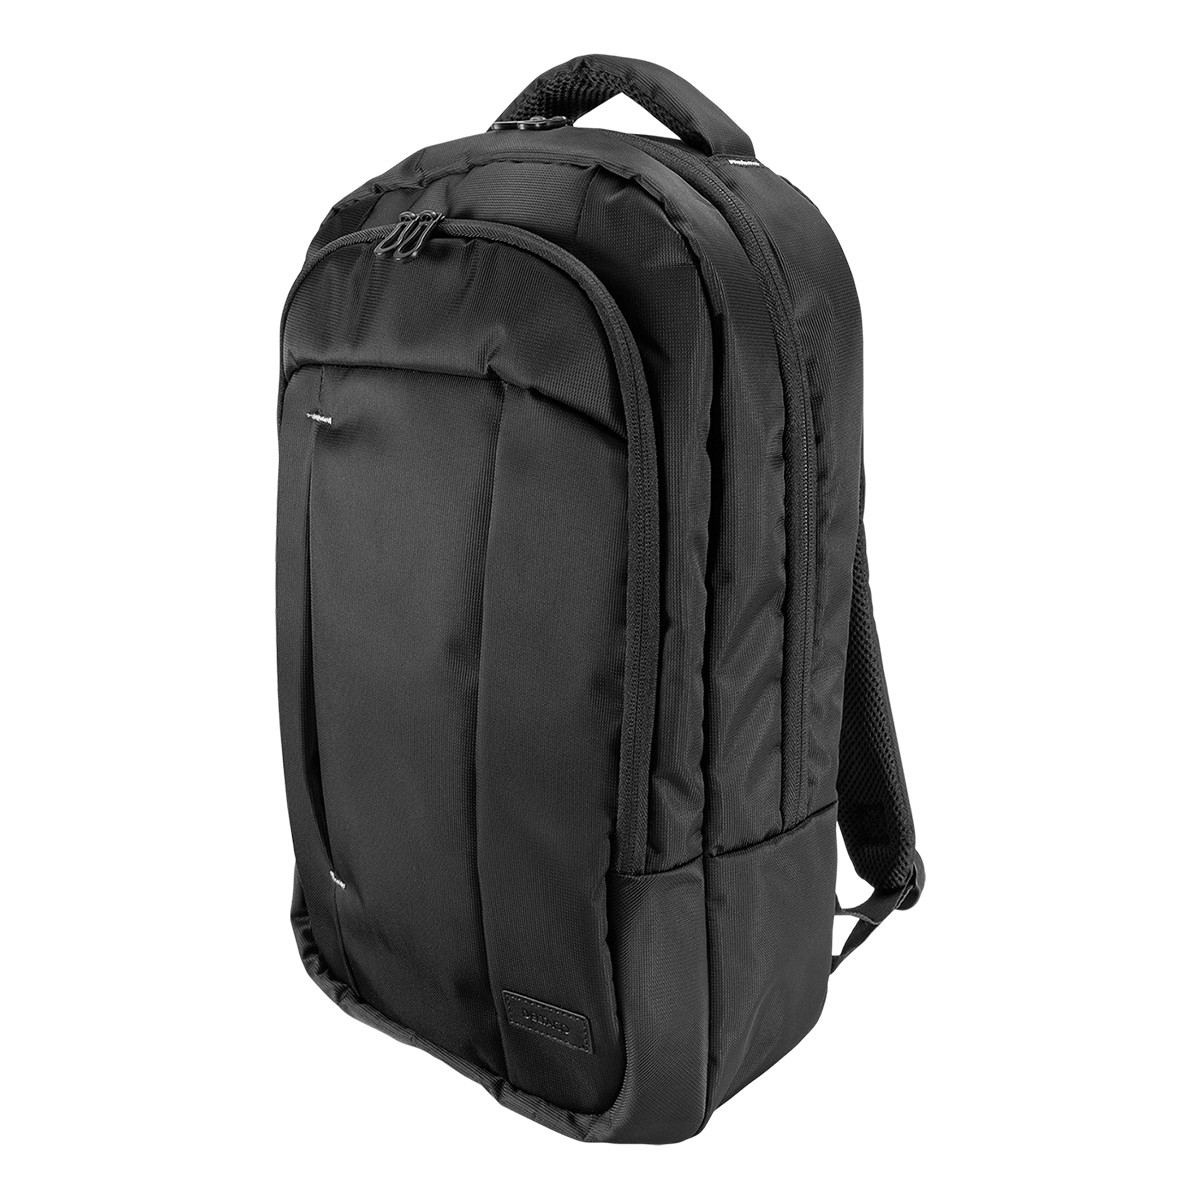 Deltaco Datorryggsäck för laptops upp till 15.6 tum, svart